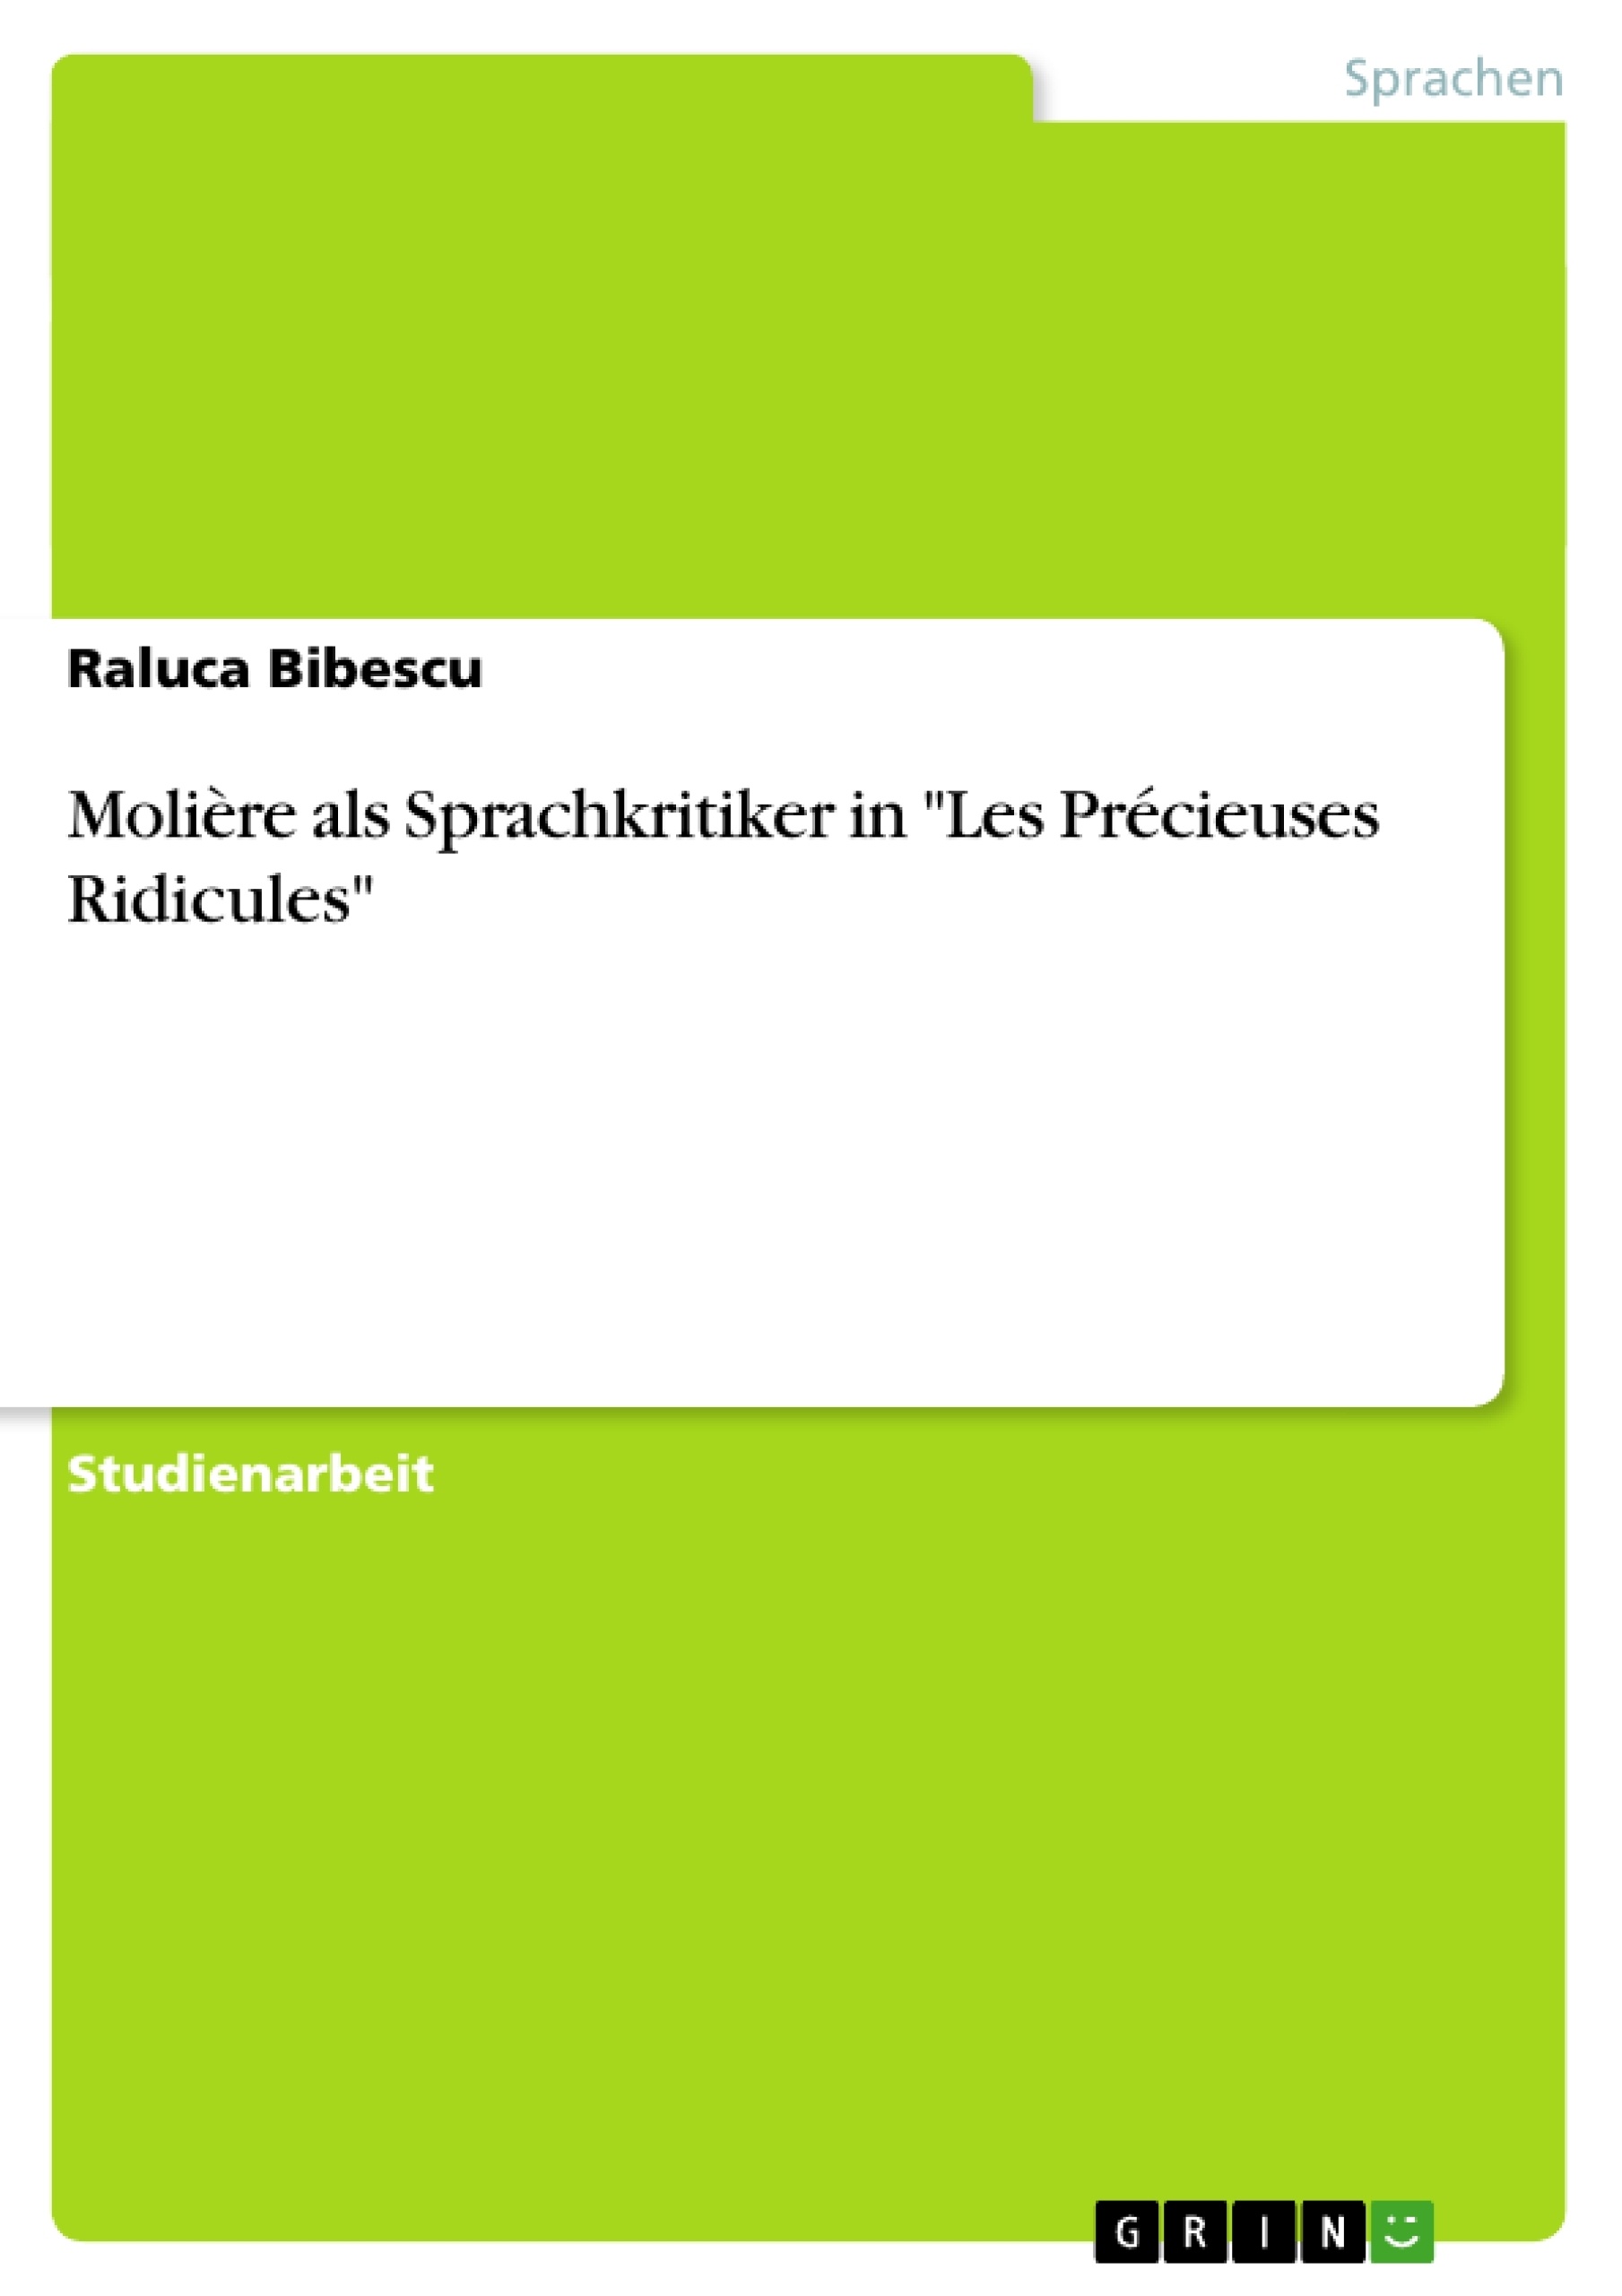 Title: Molière als Sprachkritiker in "Les Précieuses Ridicules"